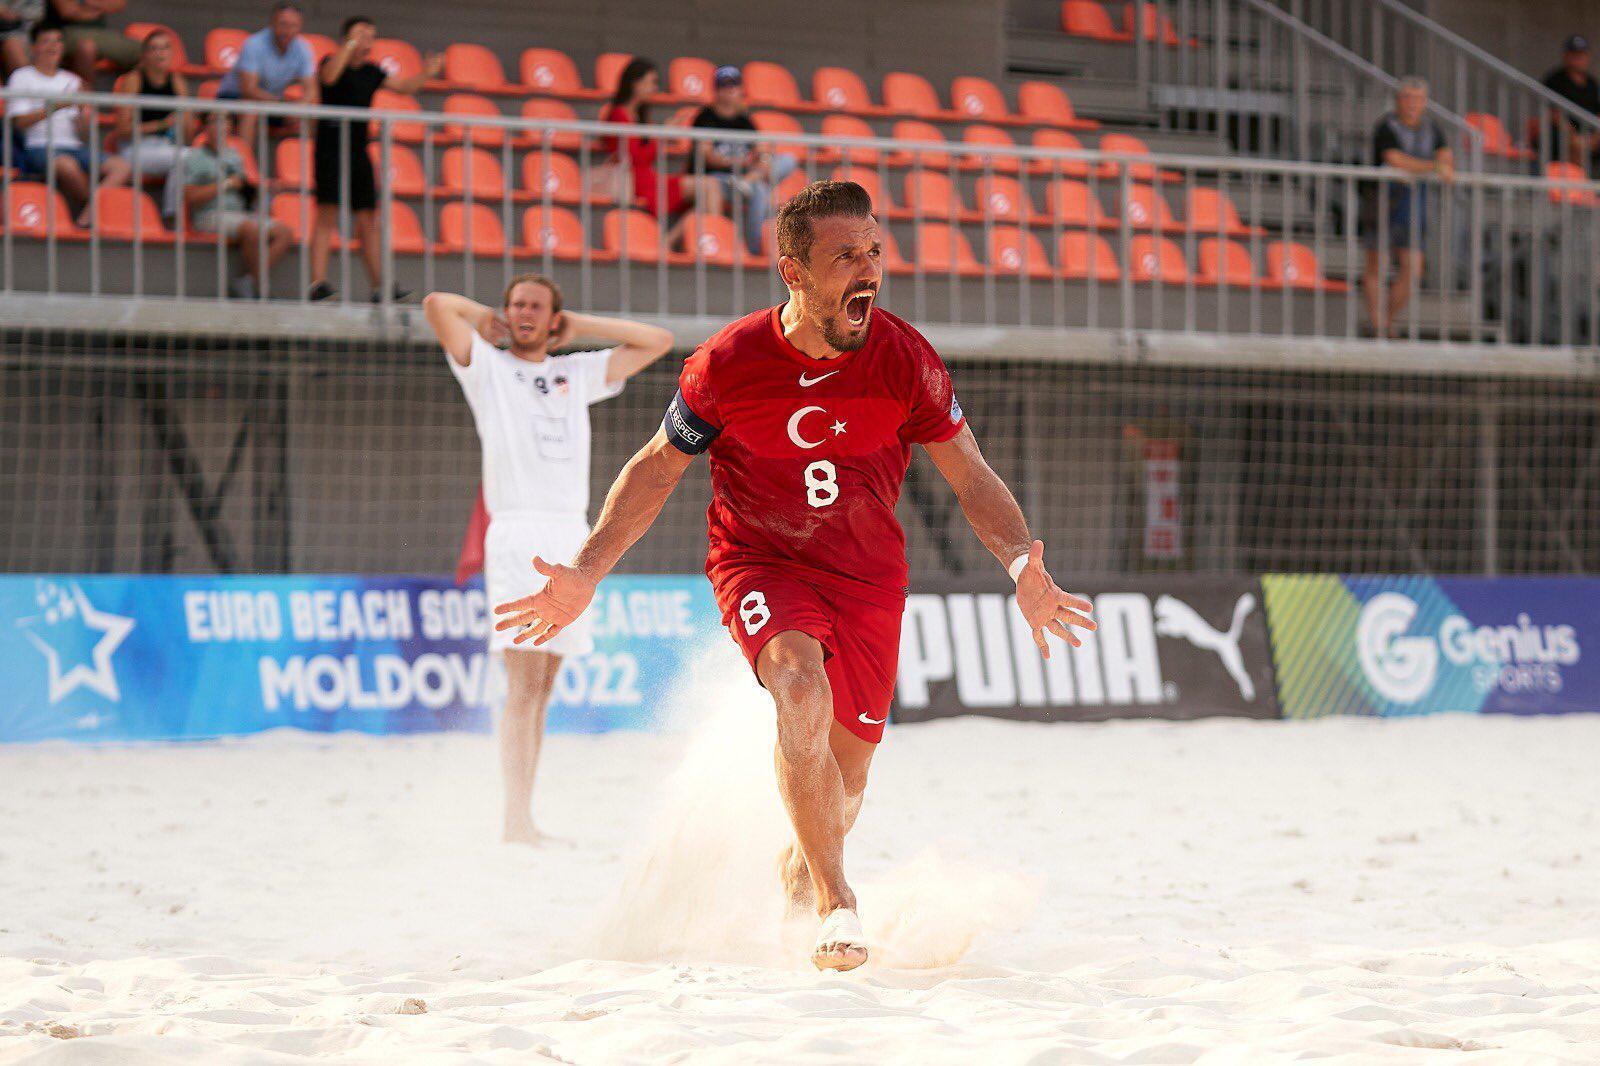 Plaj Futbolu Milli Takımı, Danimarkayı 1-0la geçti